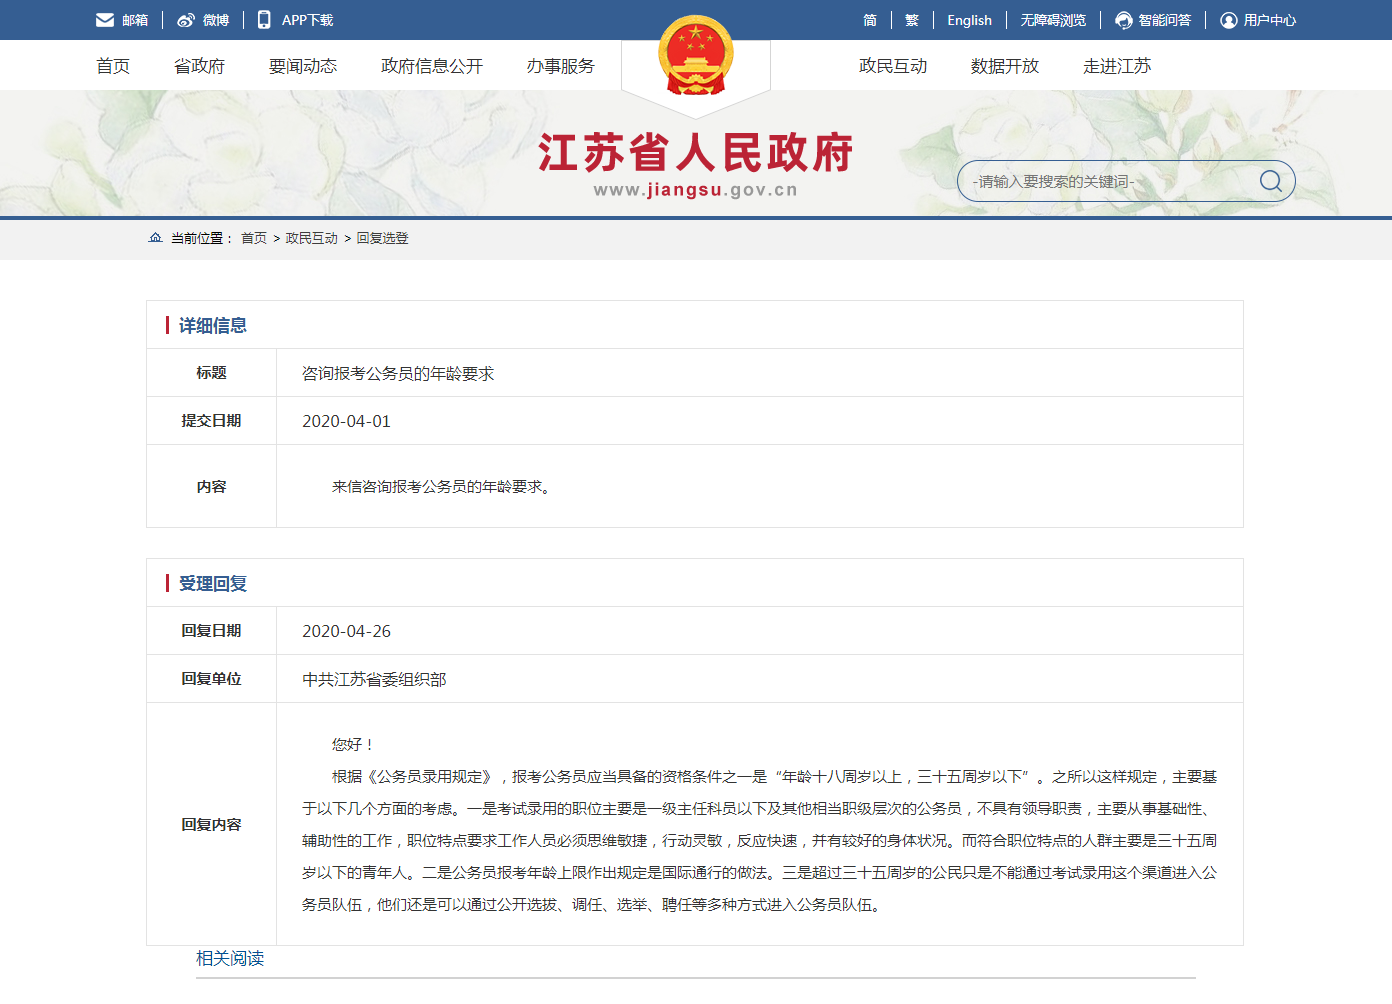 江苏省人民政府 回复选登 咨询报考公务员的年龄要求.png